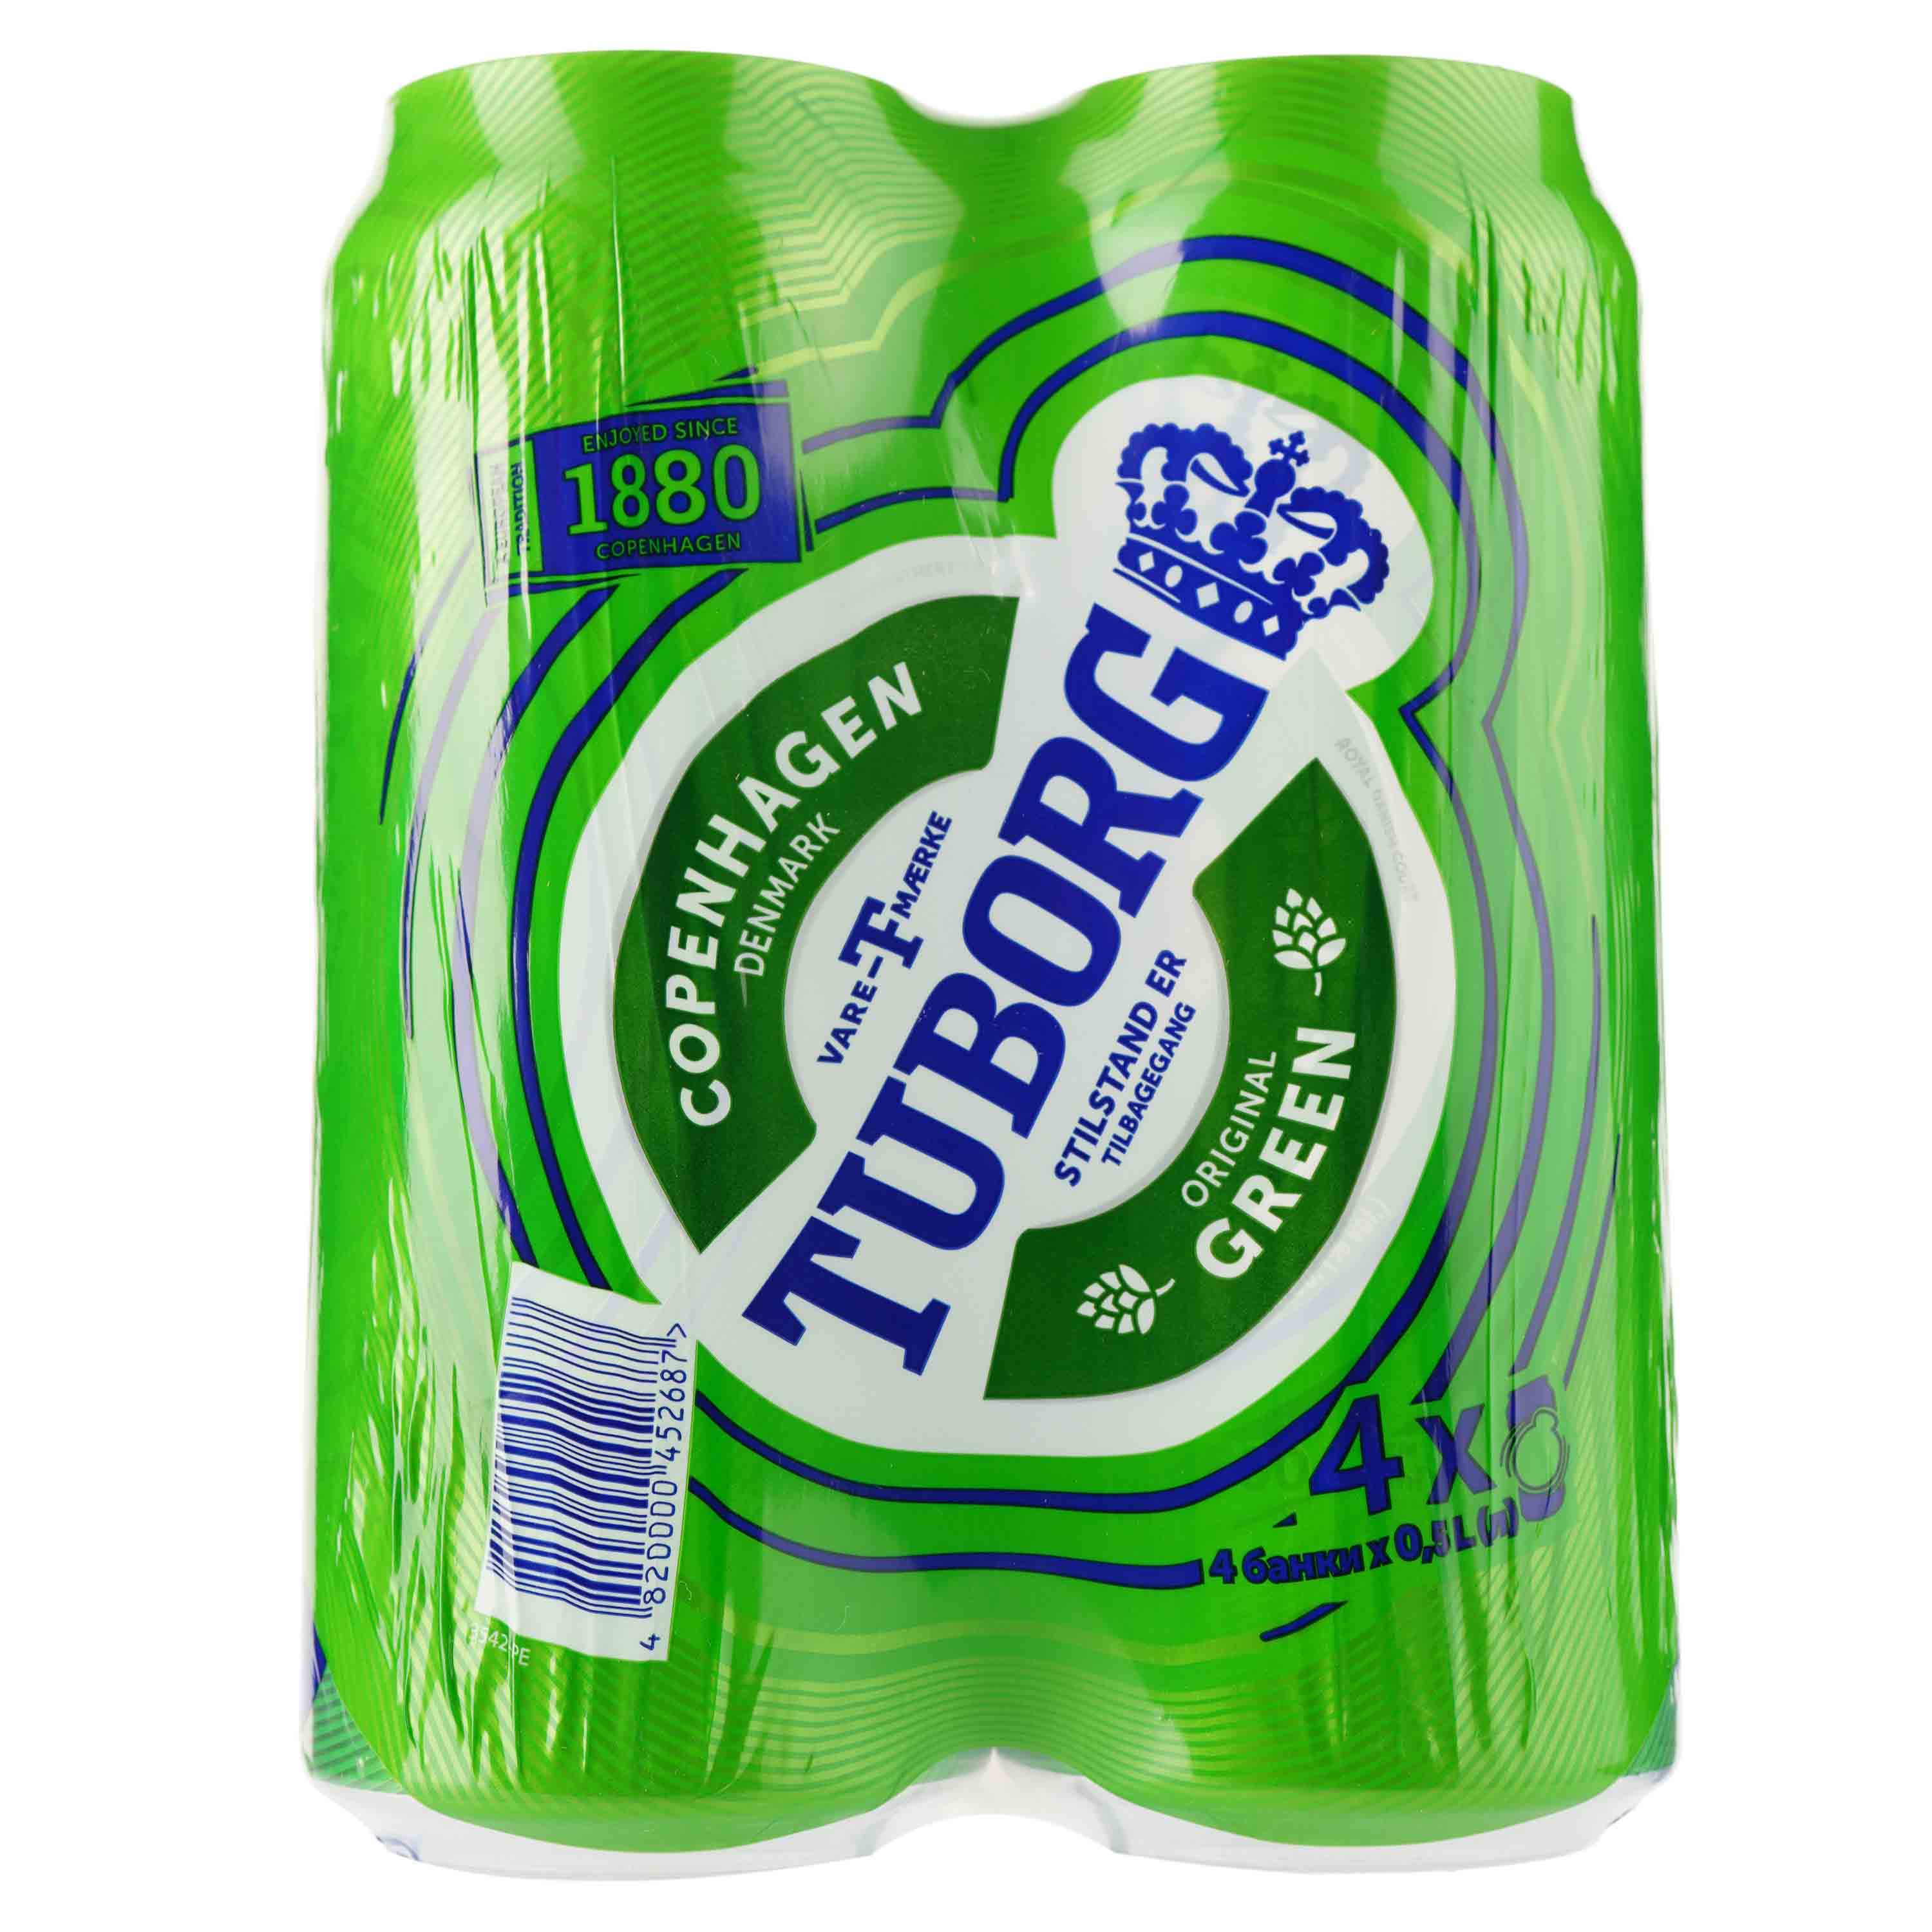 Пиво Tuborg Green, світле, 4,6%, з/б, 2 л (4 шт. по 0,5 л) (224869) - фото 1